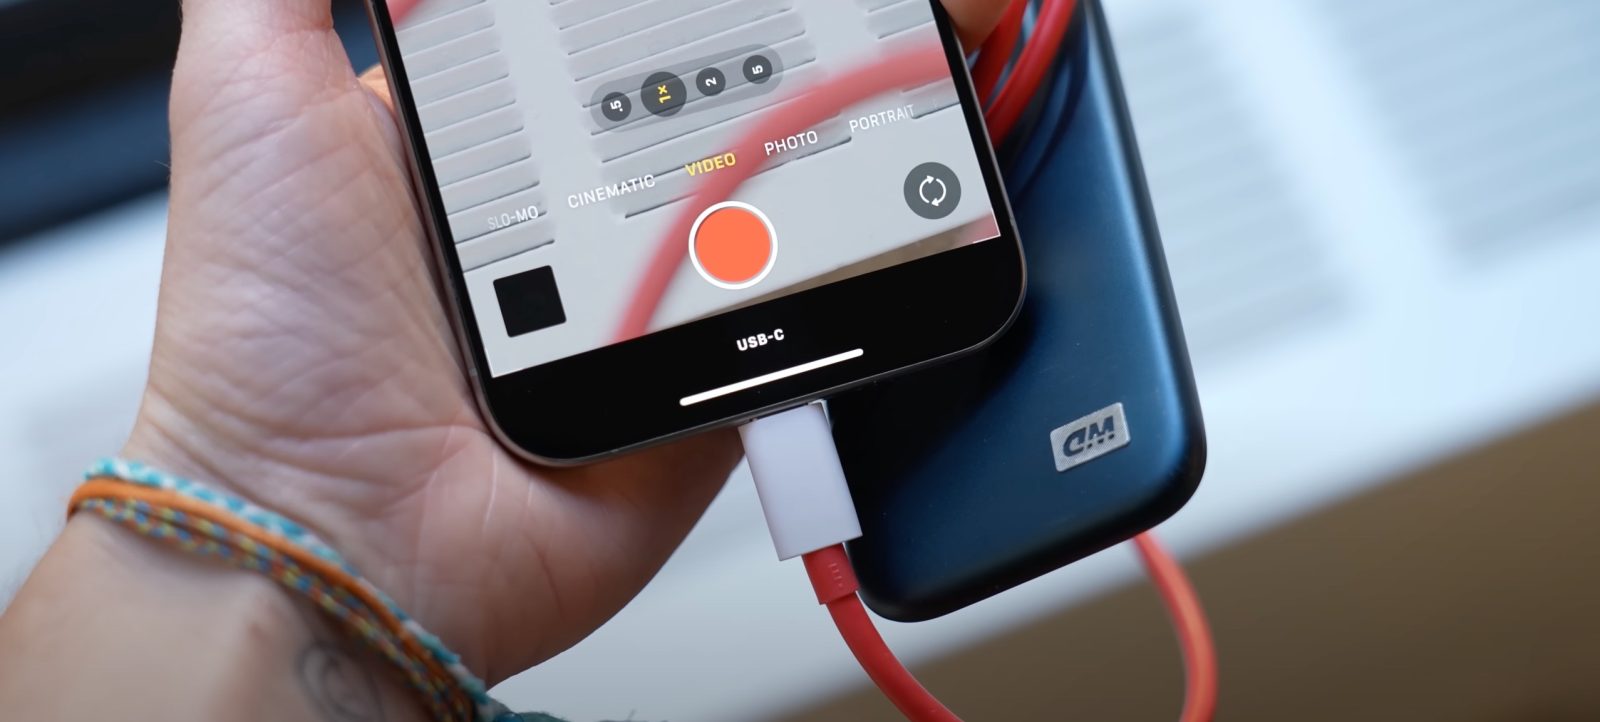 Видео iPhone 15 Pro напрямую на SSD показывает индикатор USB-C